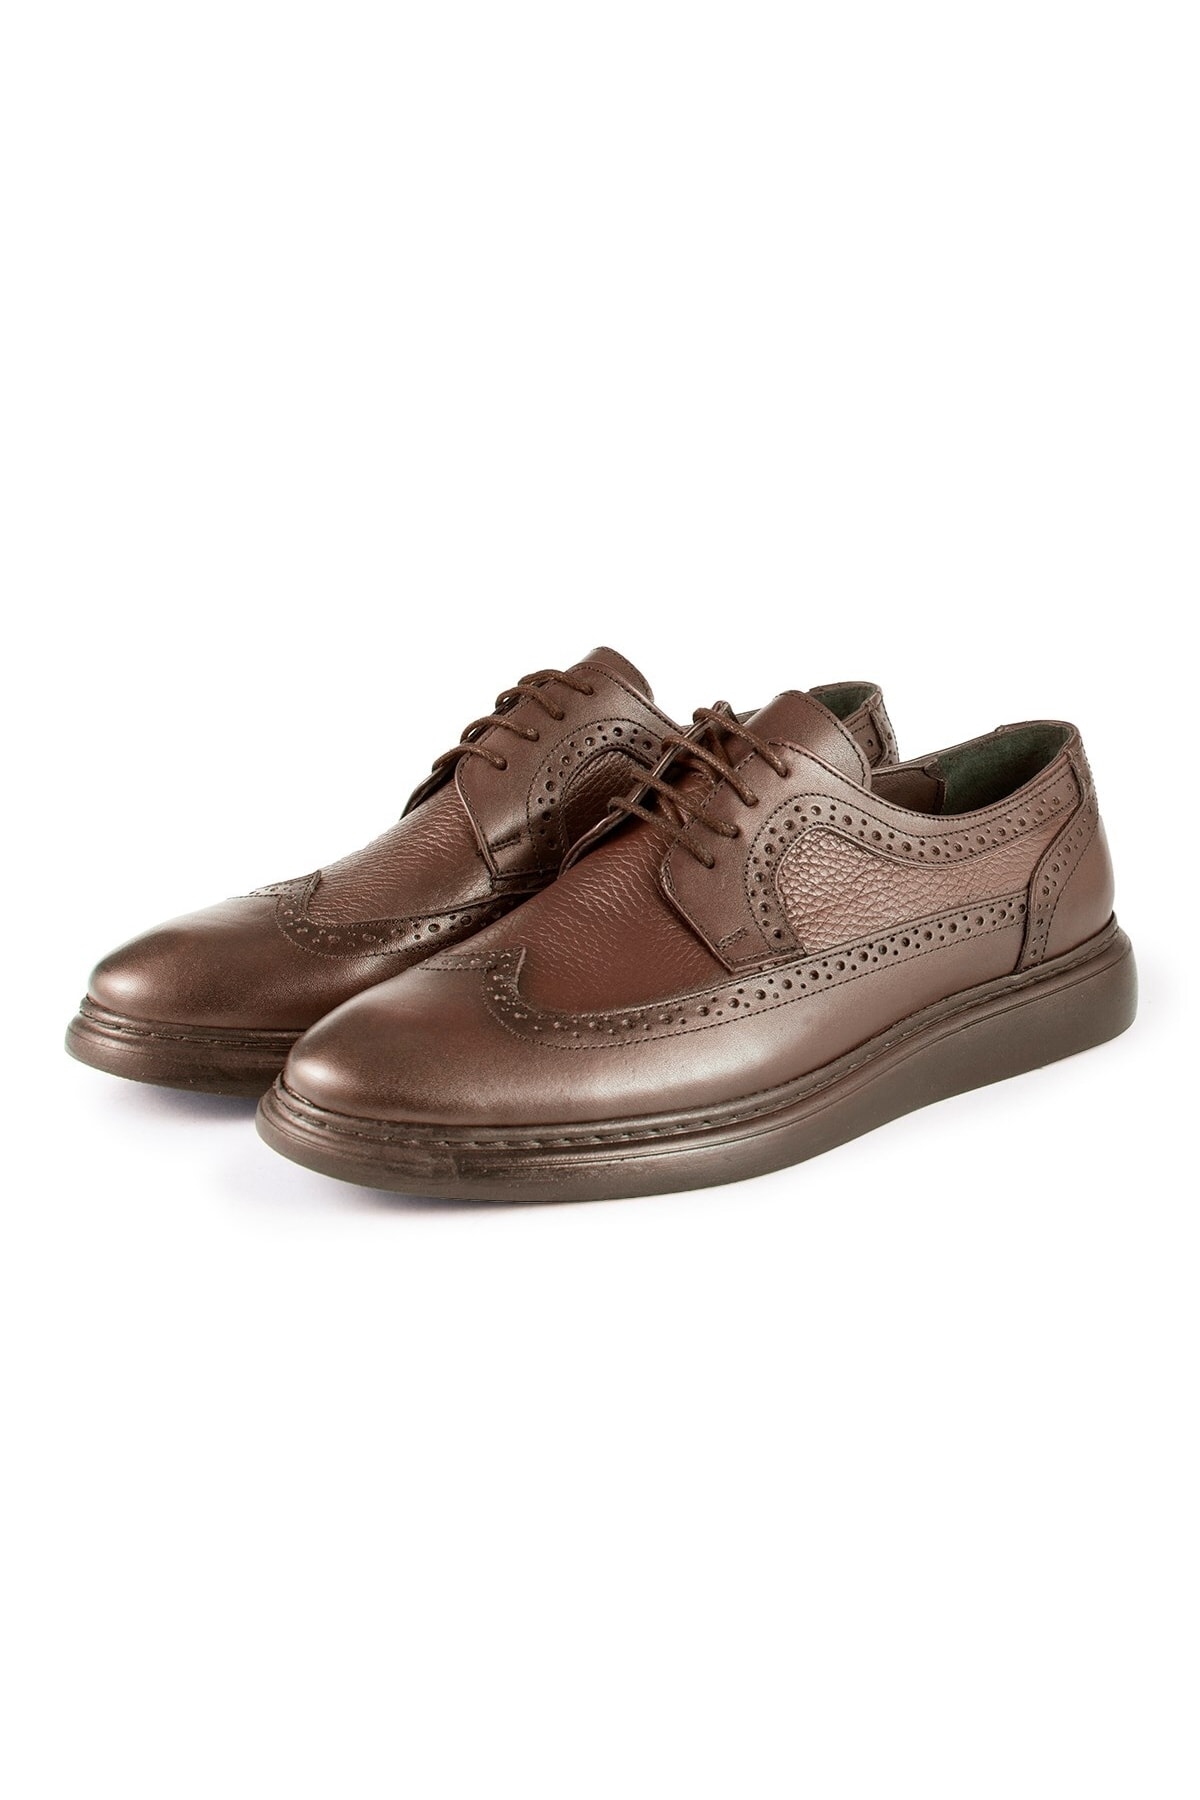 Ducavelli Lusso Genuine Leather Men's Casual Classic Shoes, Genuine Leather Classic Shoes, Derby Classic